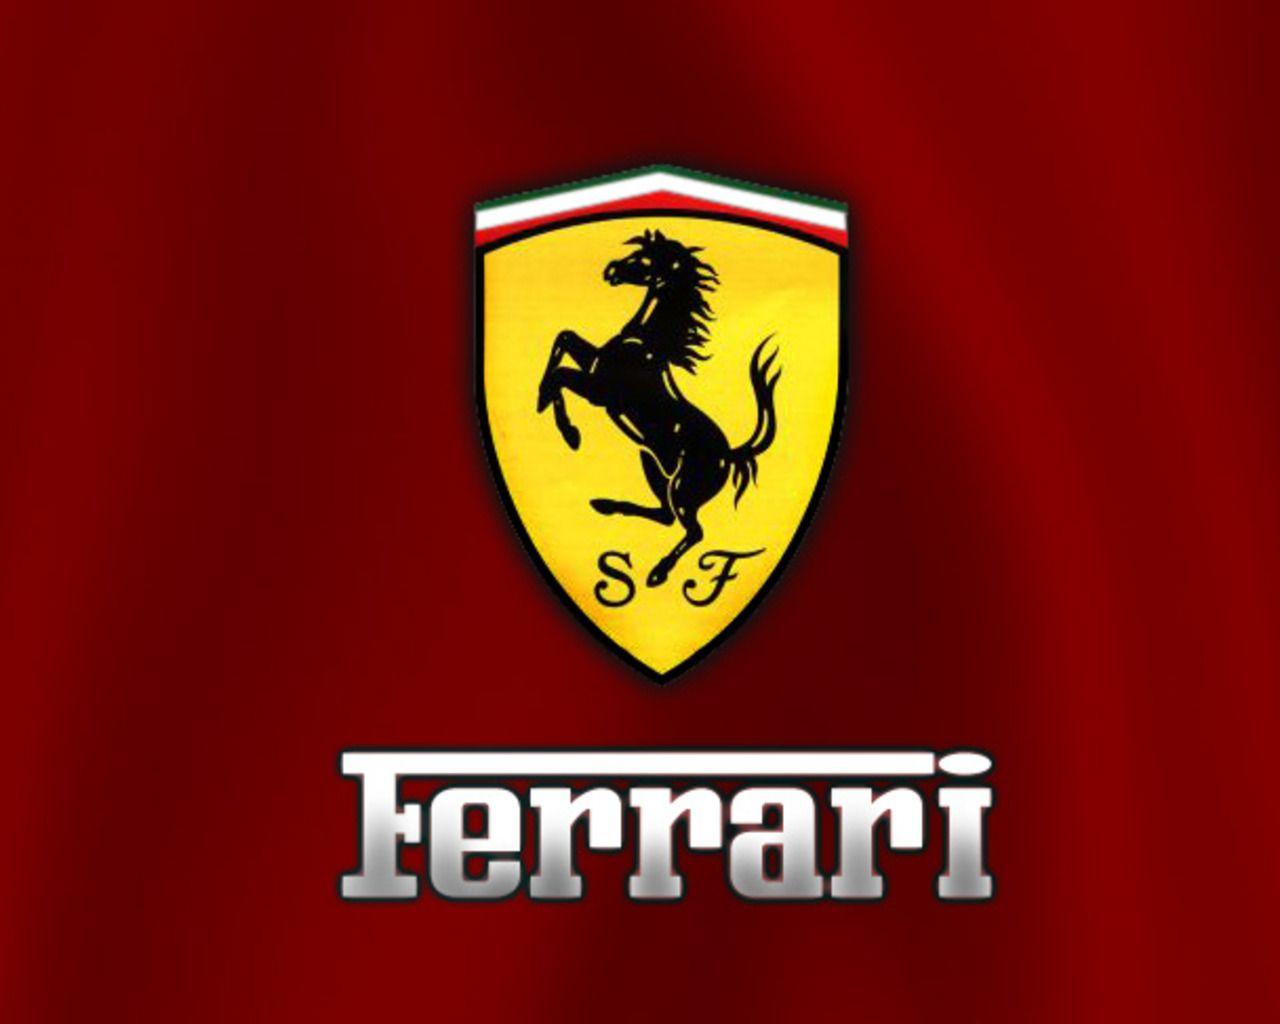 Ferrari Symbol Wallpapers HD - Wallpaper Cave